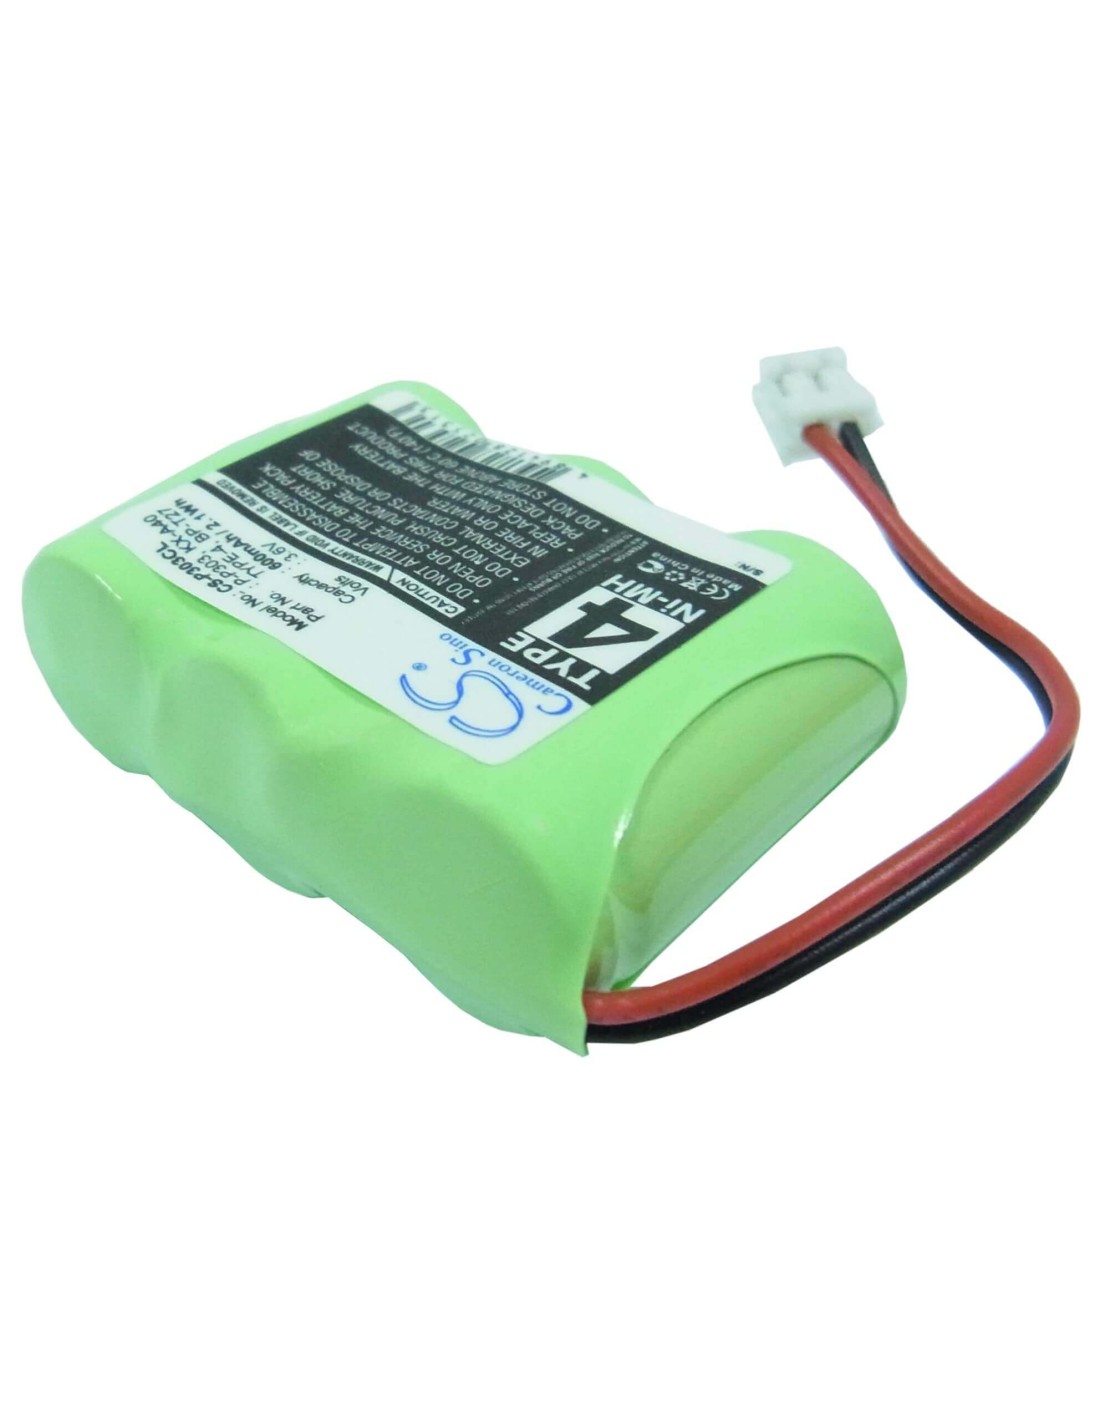 Battery for Vmix, Vt2558, Vt-2558, Vt9109, Vt-9109, 3.6V, 600mAh - 2.16Wh